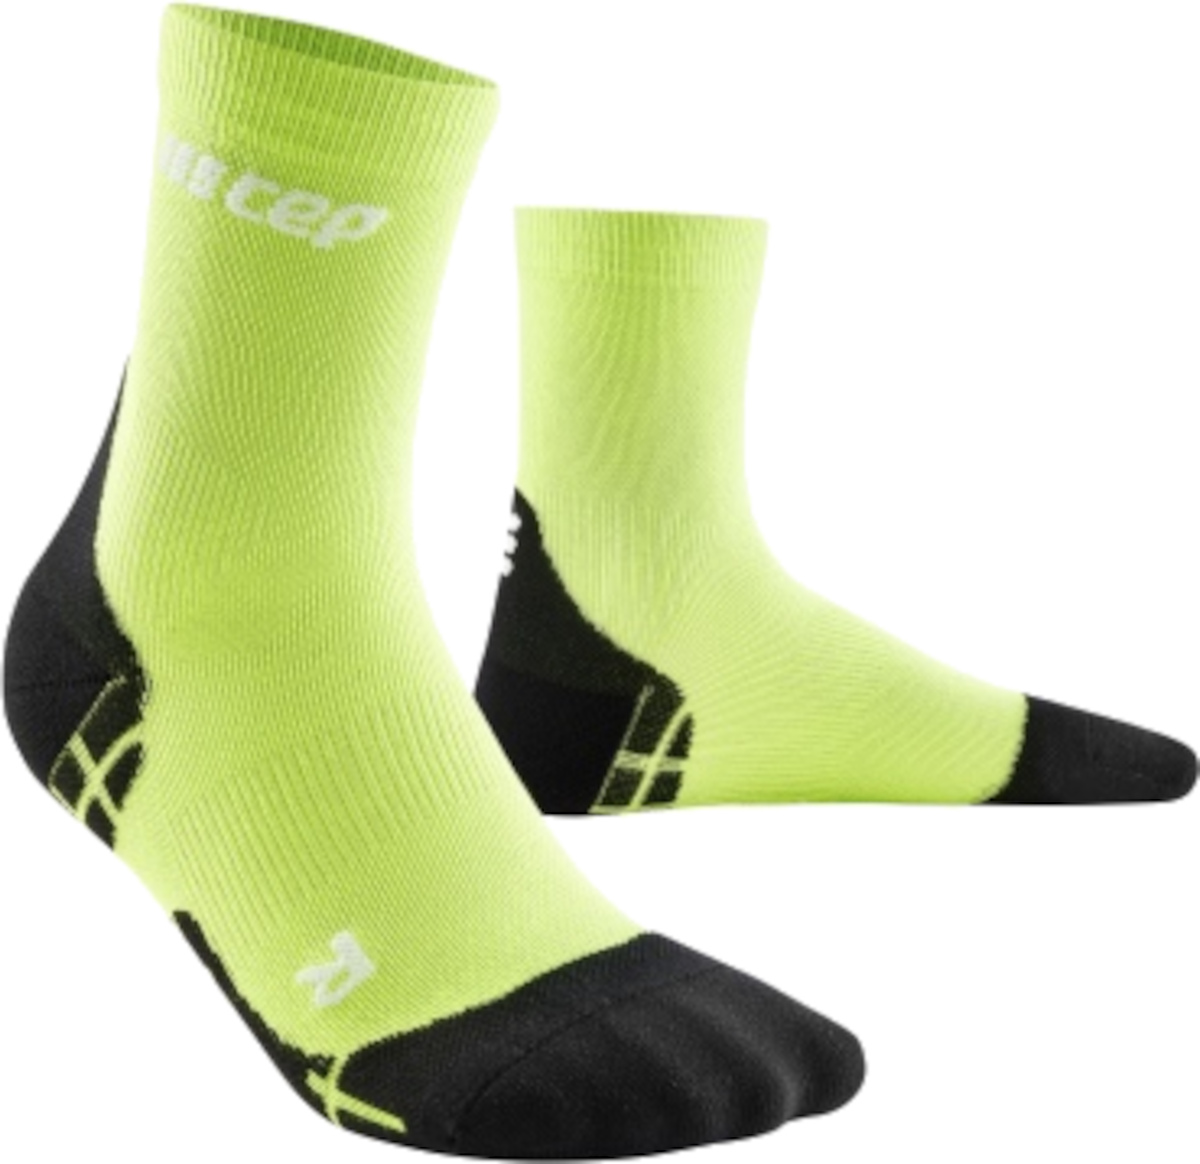 Dámské běžecké kompresní ponožky CEP Ultralight